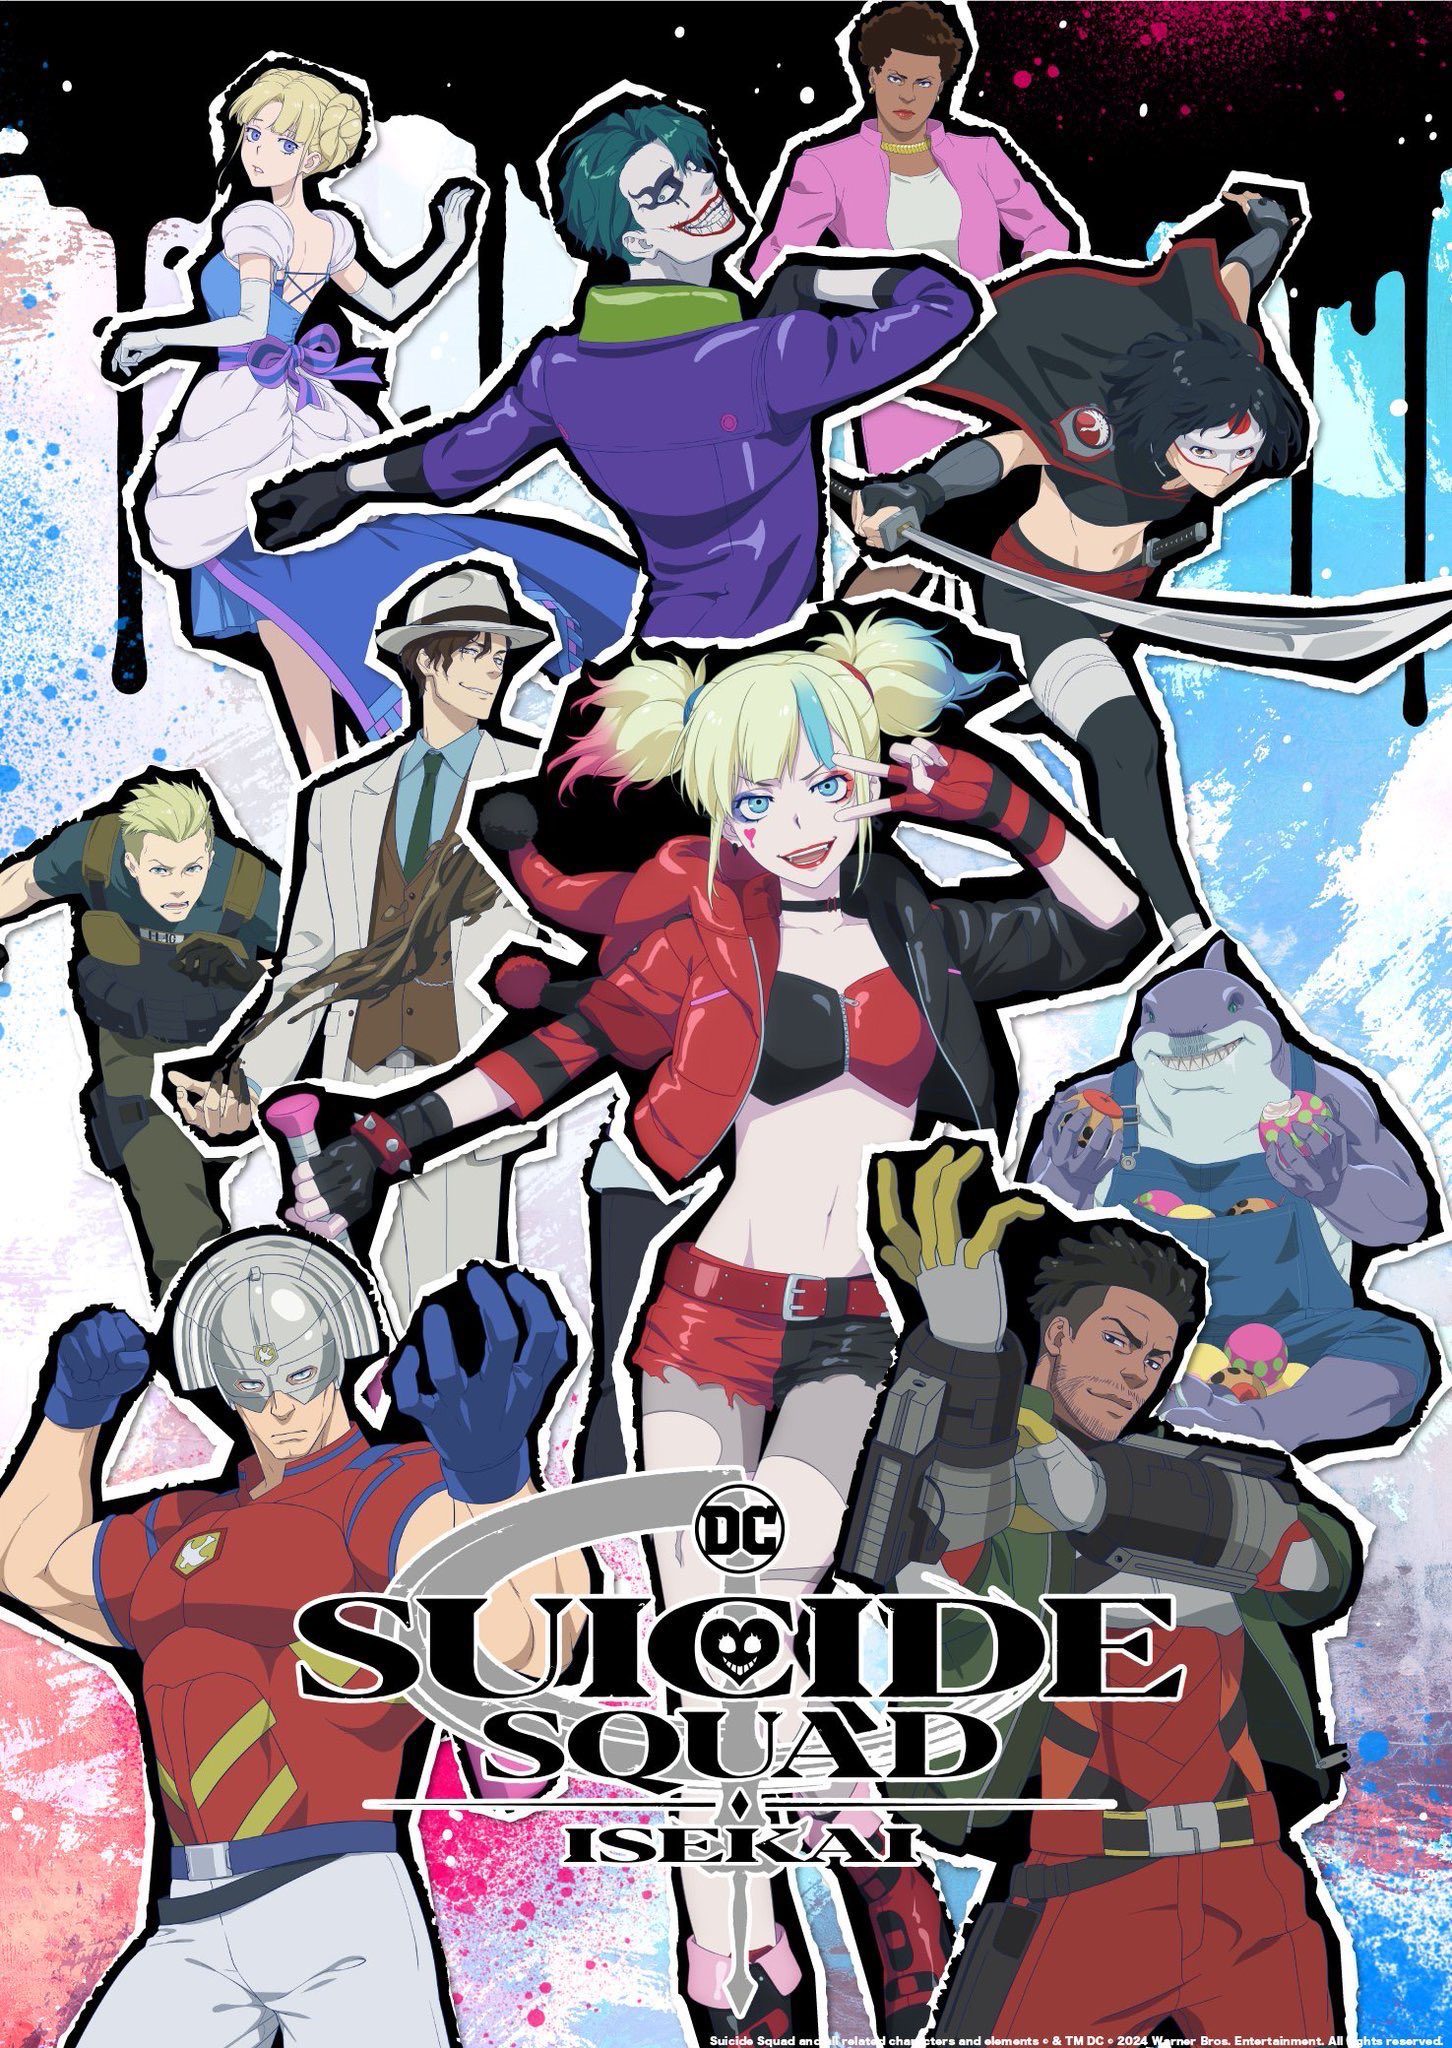 Suicide Squad ISEKAI | Official Trailer 3 | DC